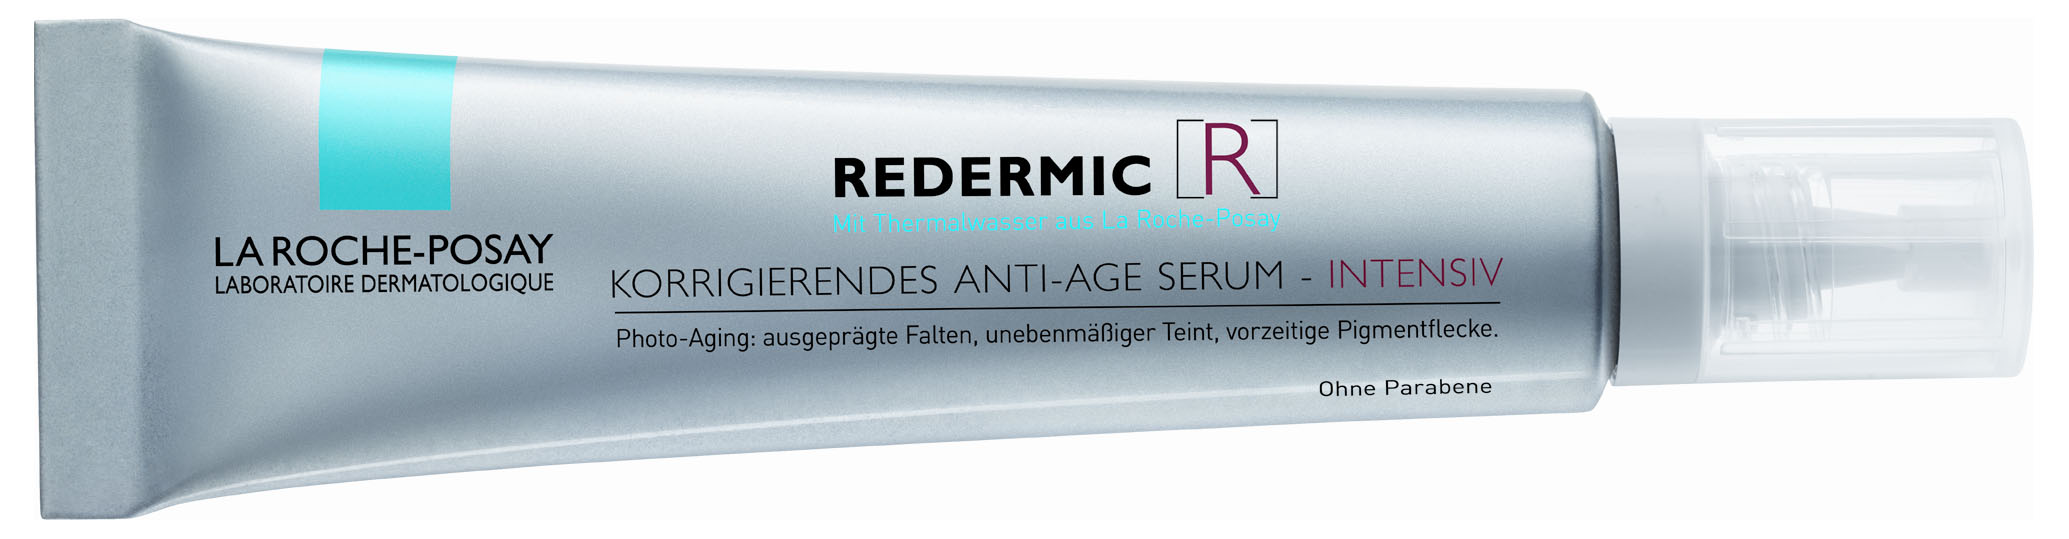 http://die-frau.com/upload/redermic_r_intensiv_korrigierendes_anti_age_serum.jpg 